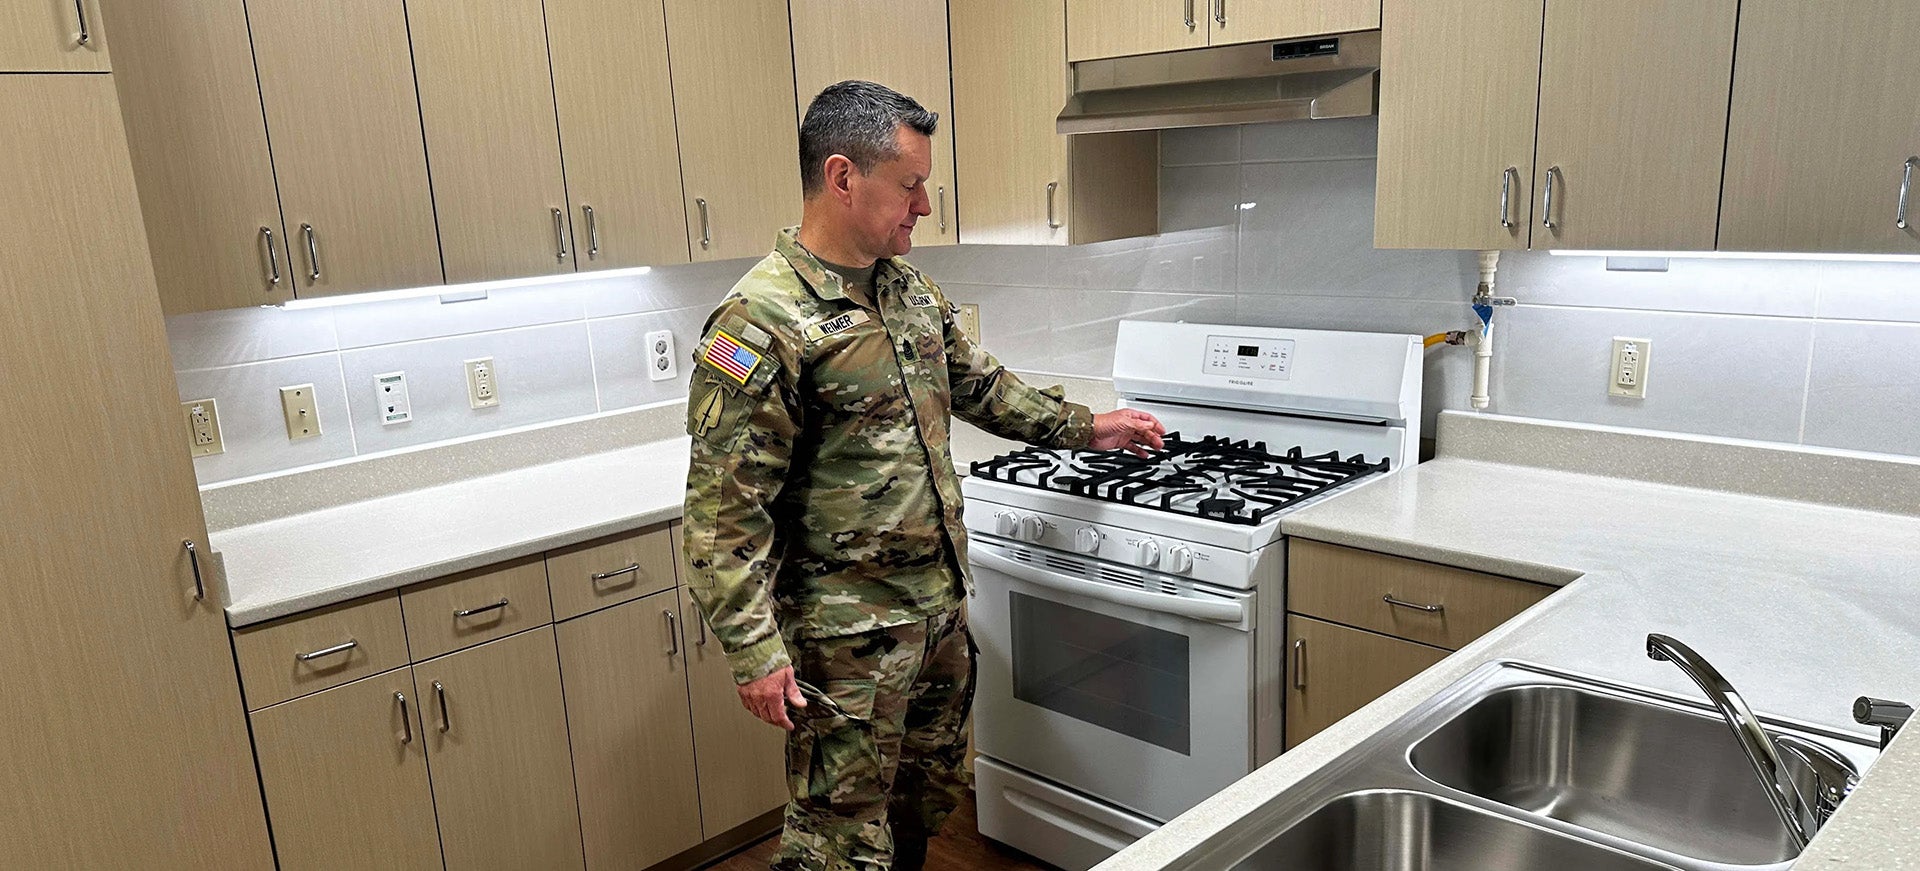 Soldier in kitchen.